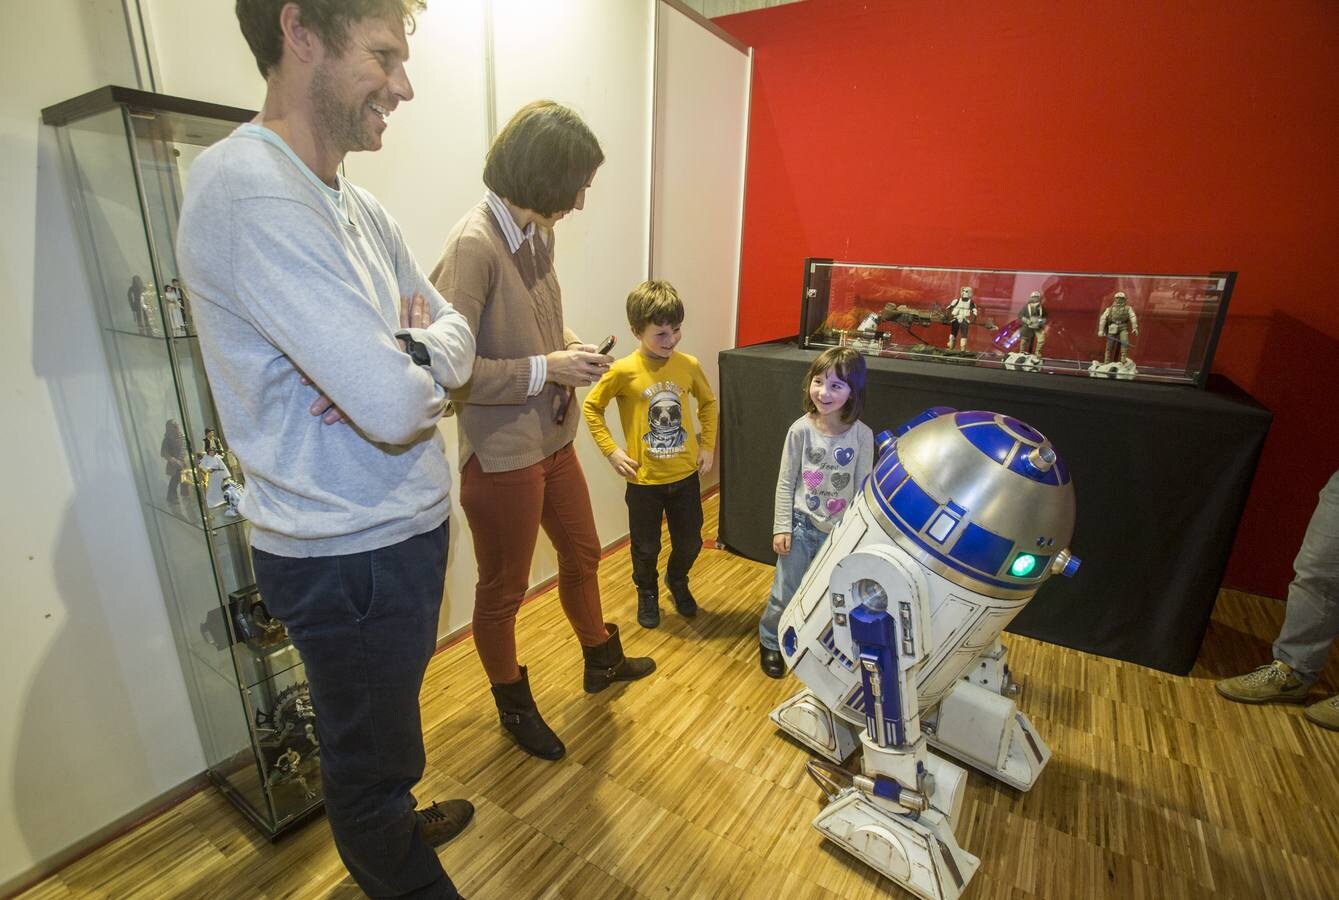 Familias completas aprovechan el tiempo libre acercándose a la muestra sobre Star Wars del Palacio de Exposiciones